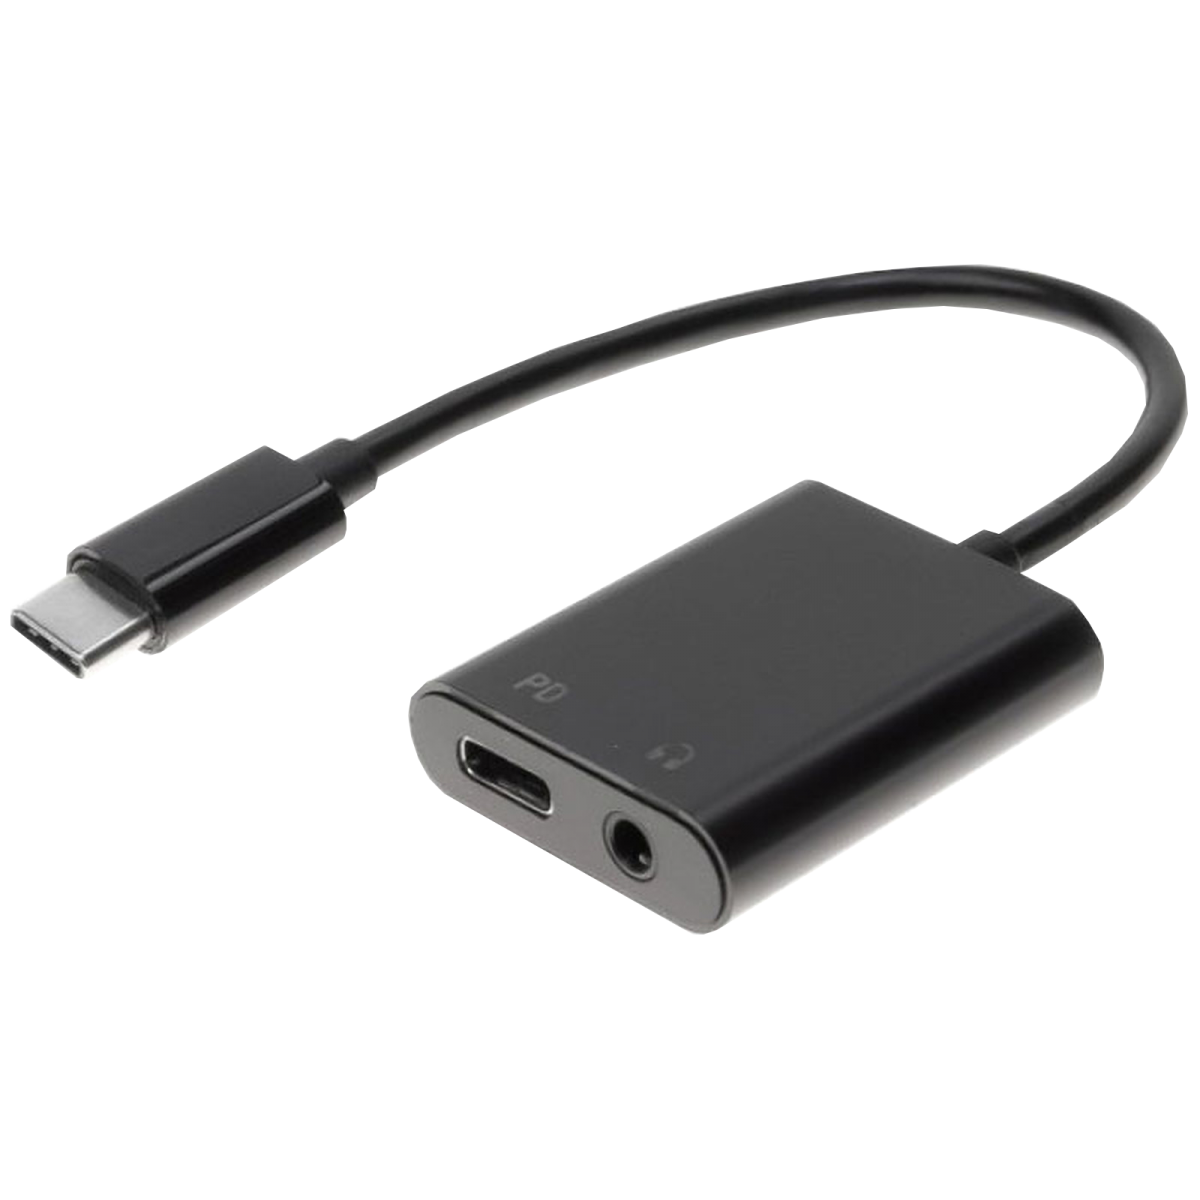 1993-P. Adaptador USB C macho a USB C hembra con jack 3,5mm